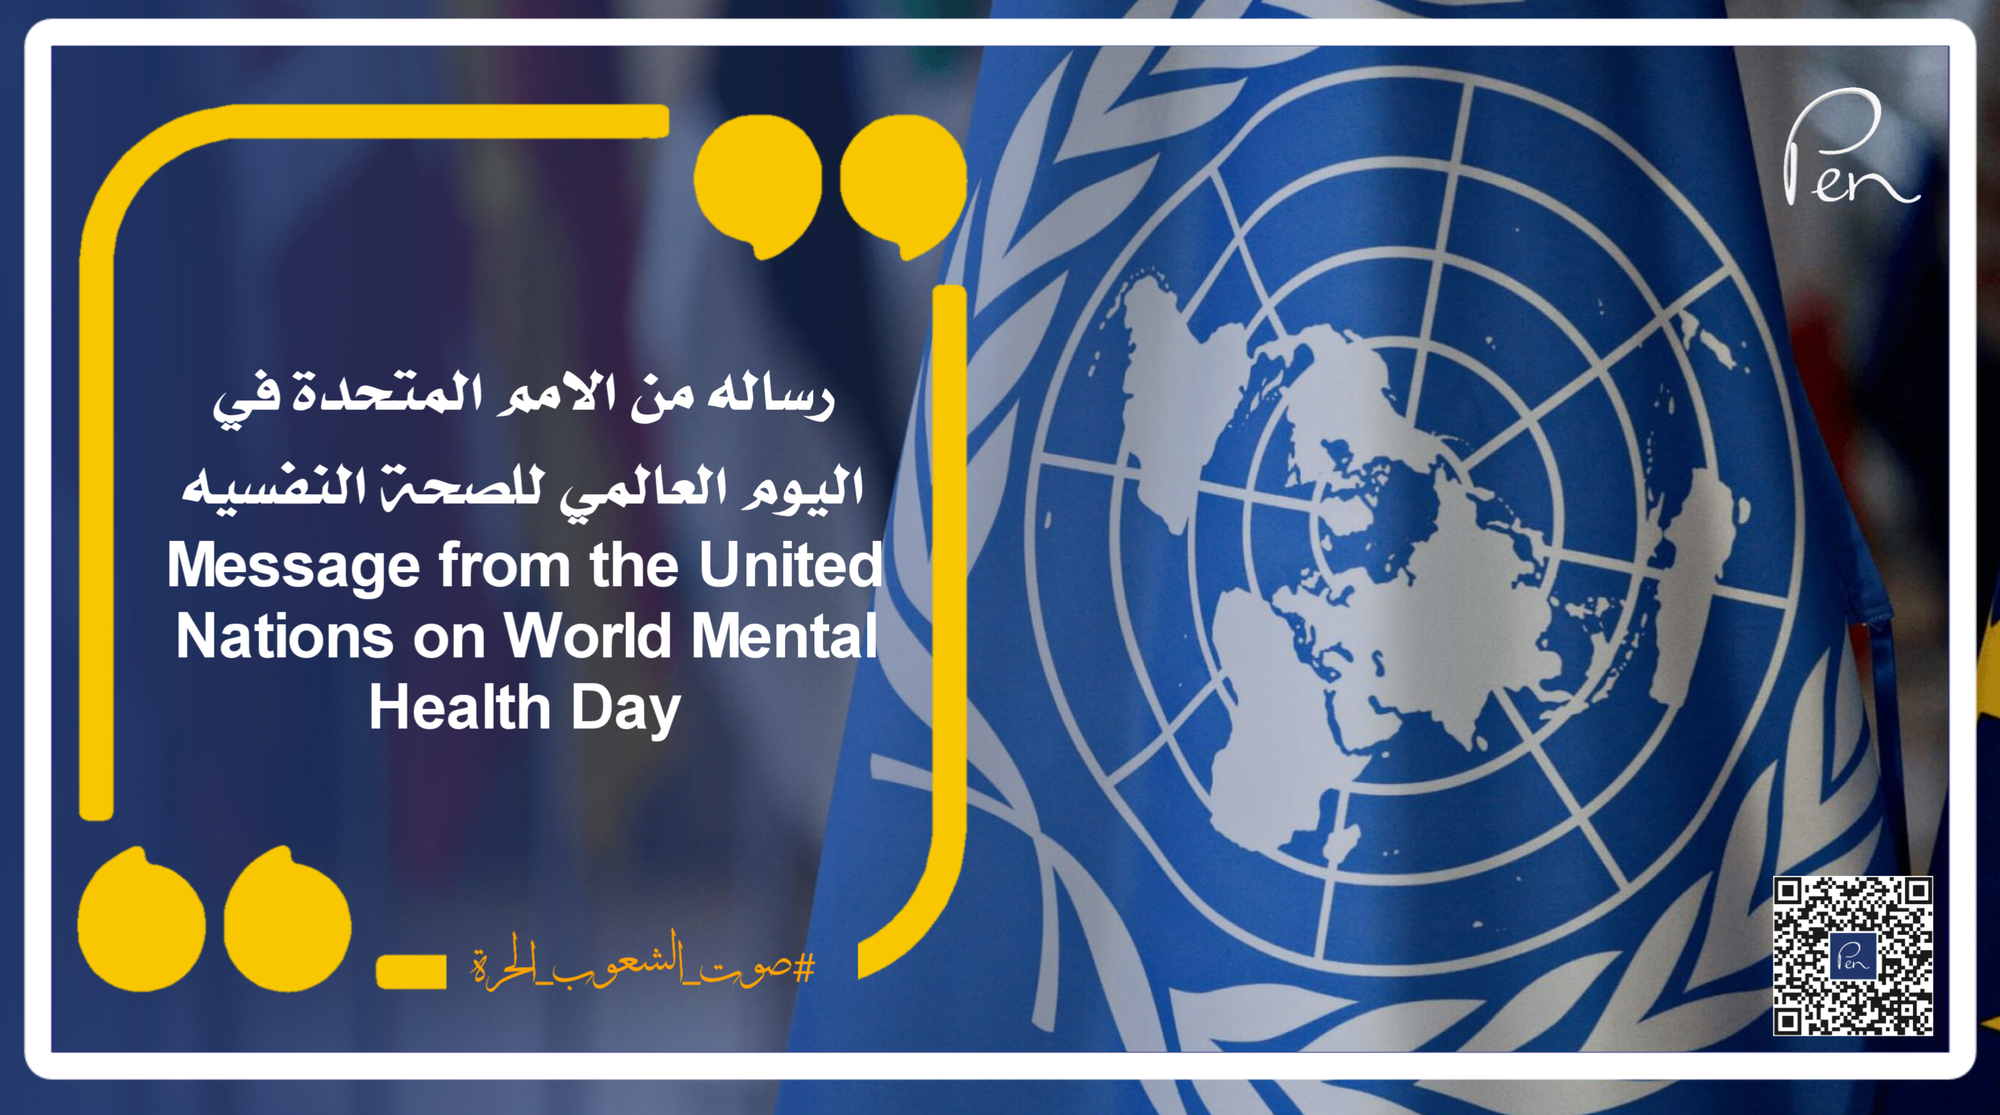 رساله من الامم المتحدة في اليوم العالمي للصحة النفسيه